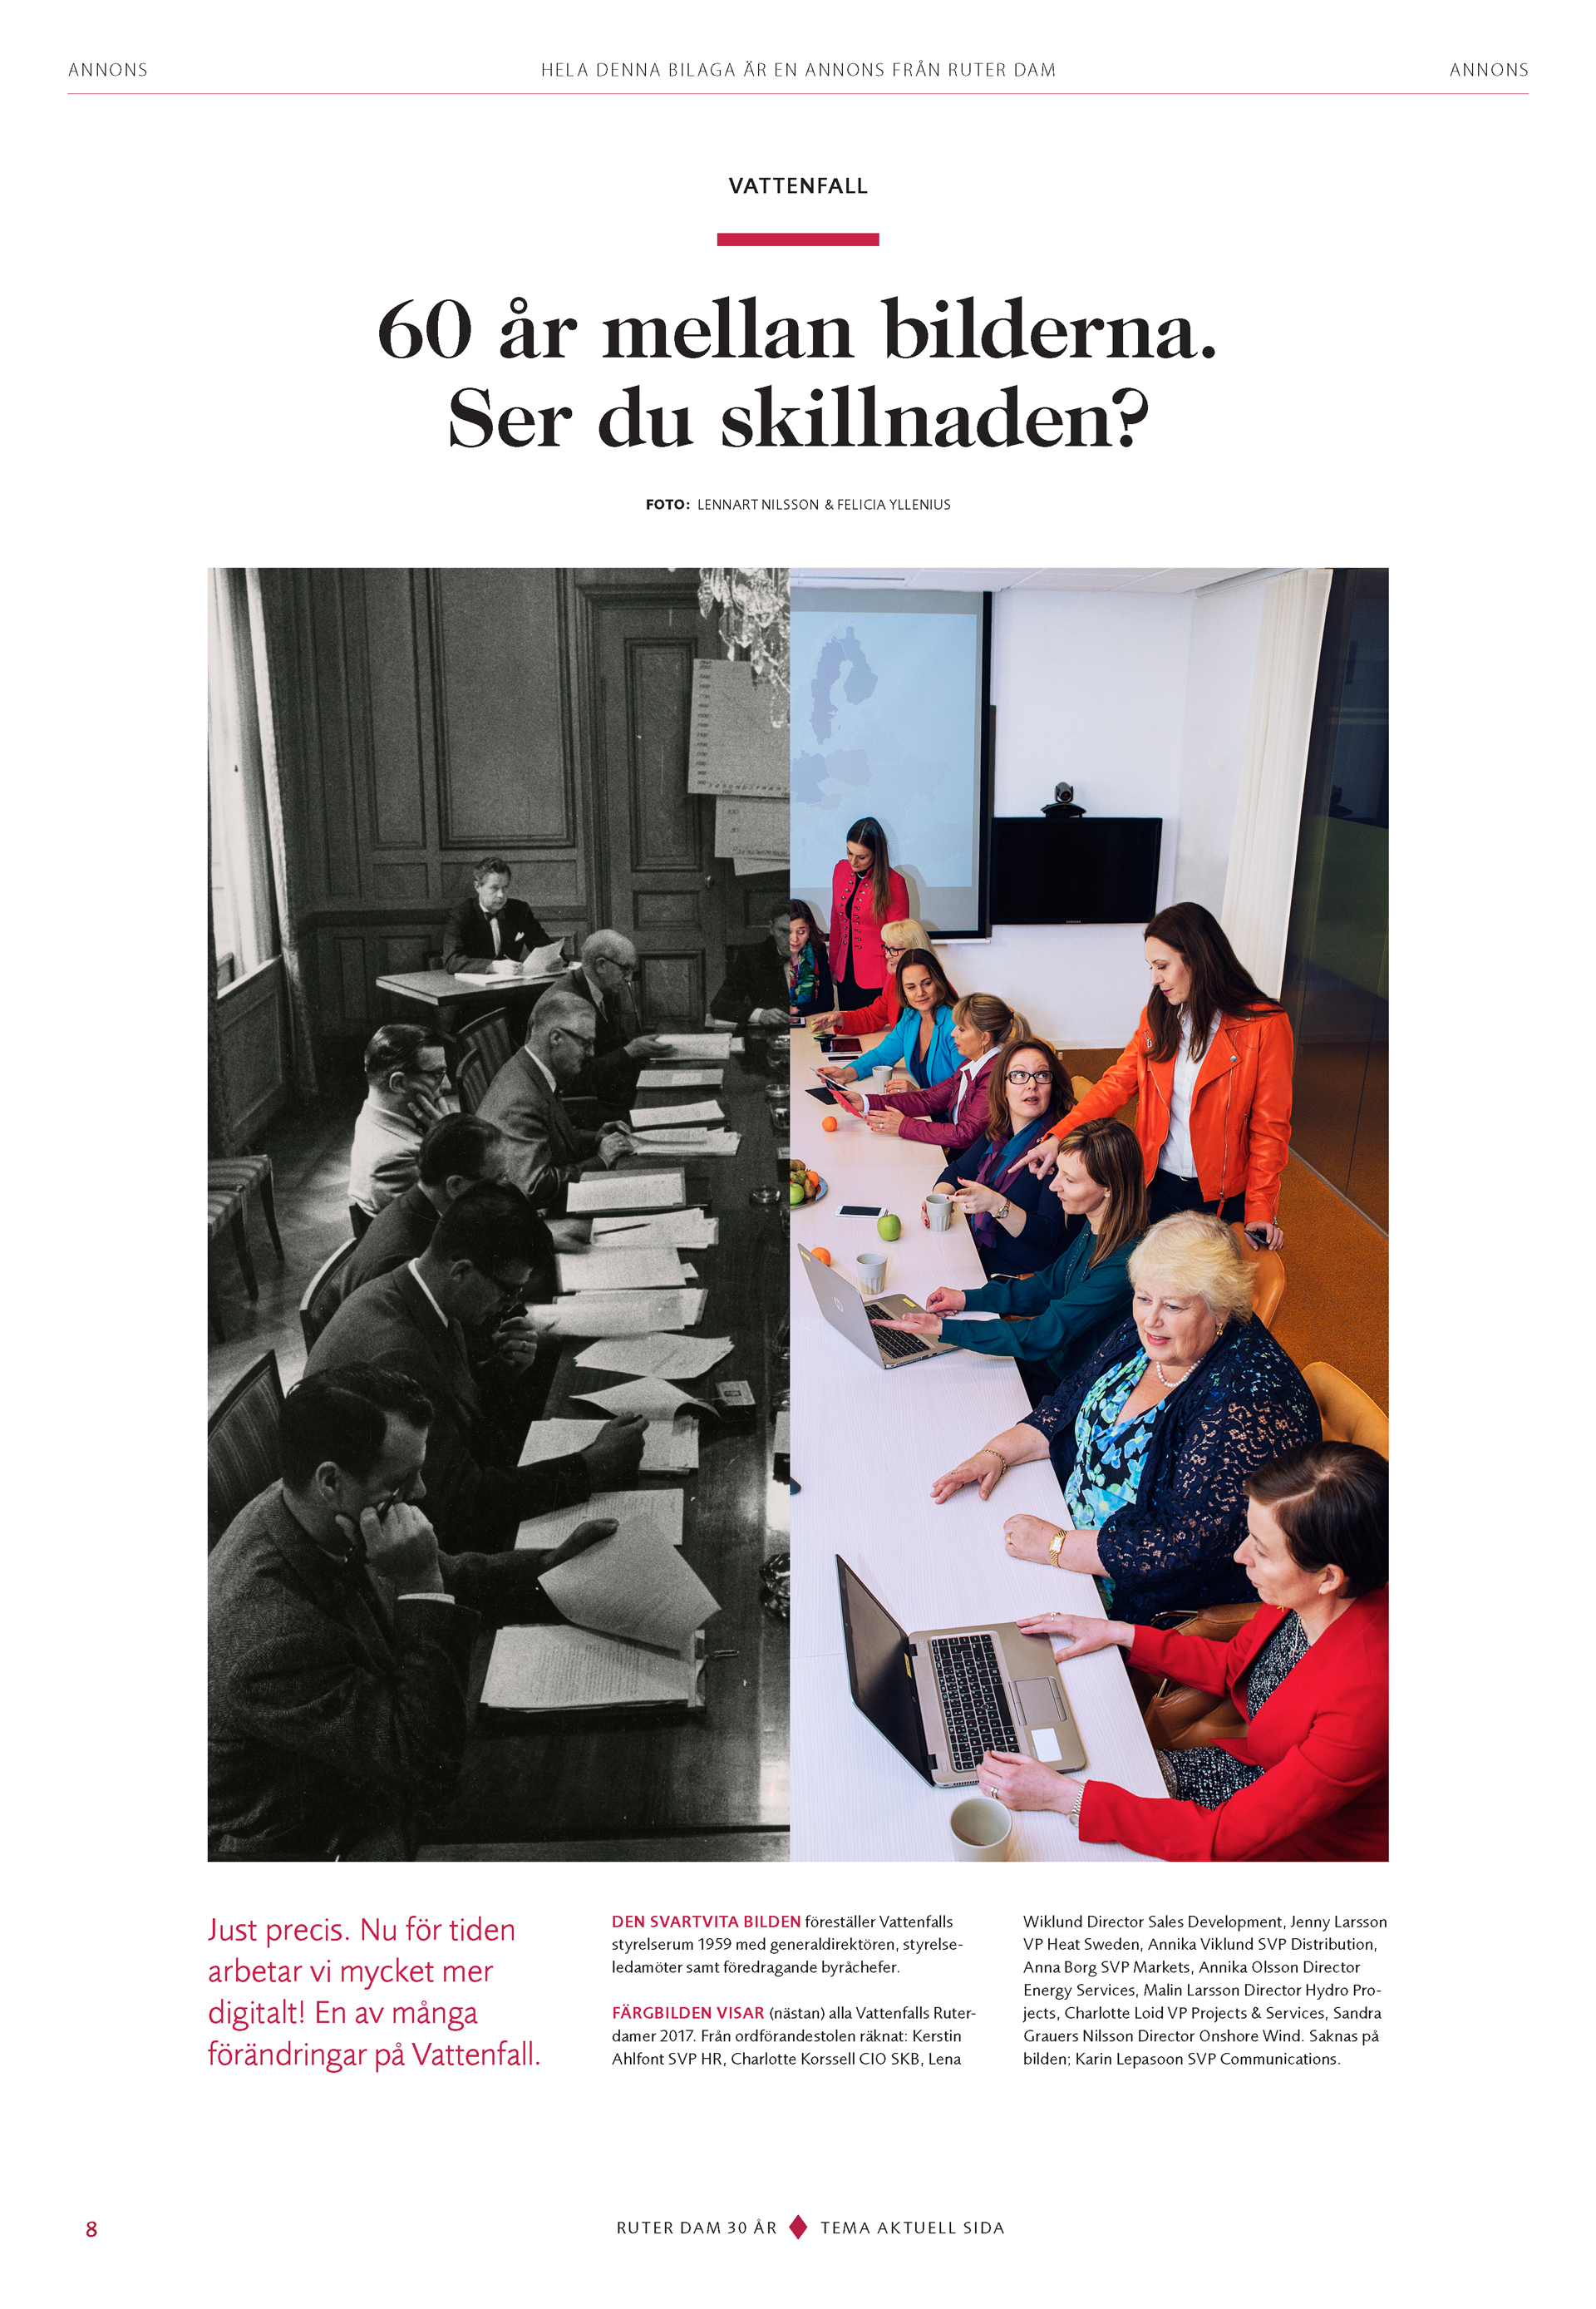 Foto på två grupper människor och texten "60 år mellan bilderna. Ser du skillnaden?" Annons från Ruter Dam